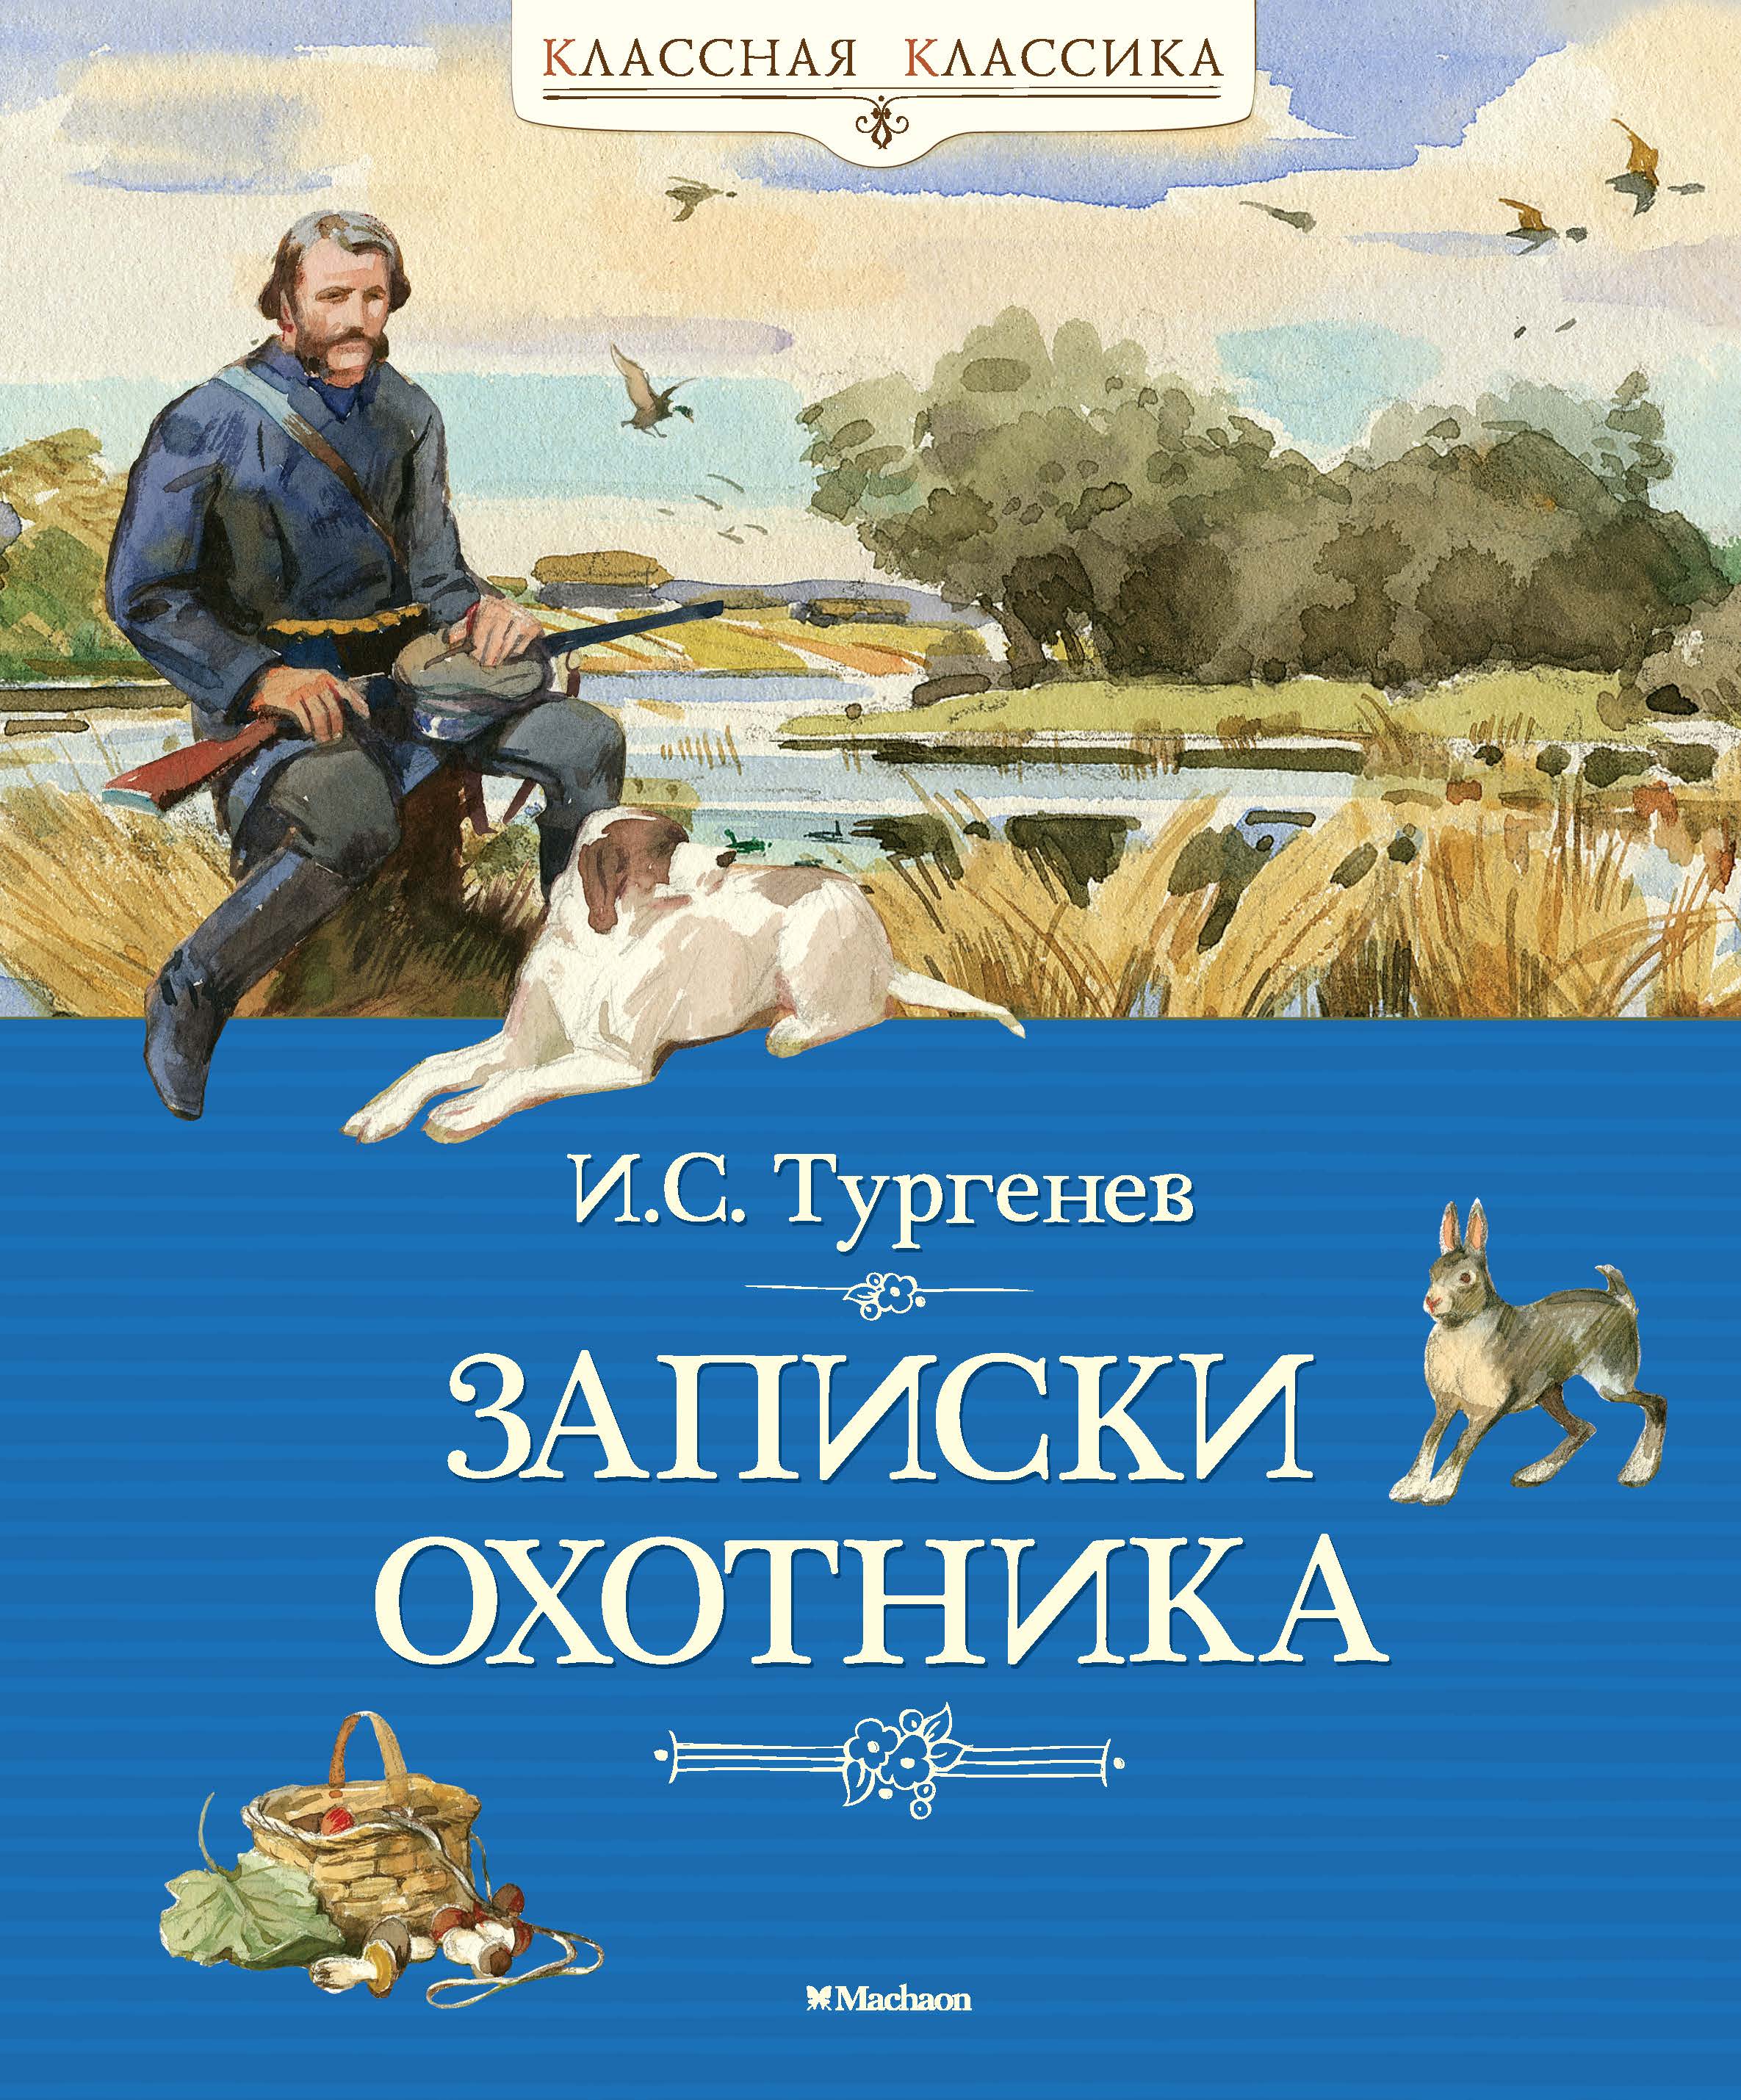 Записки охотника Тургенев 1852